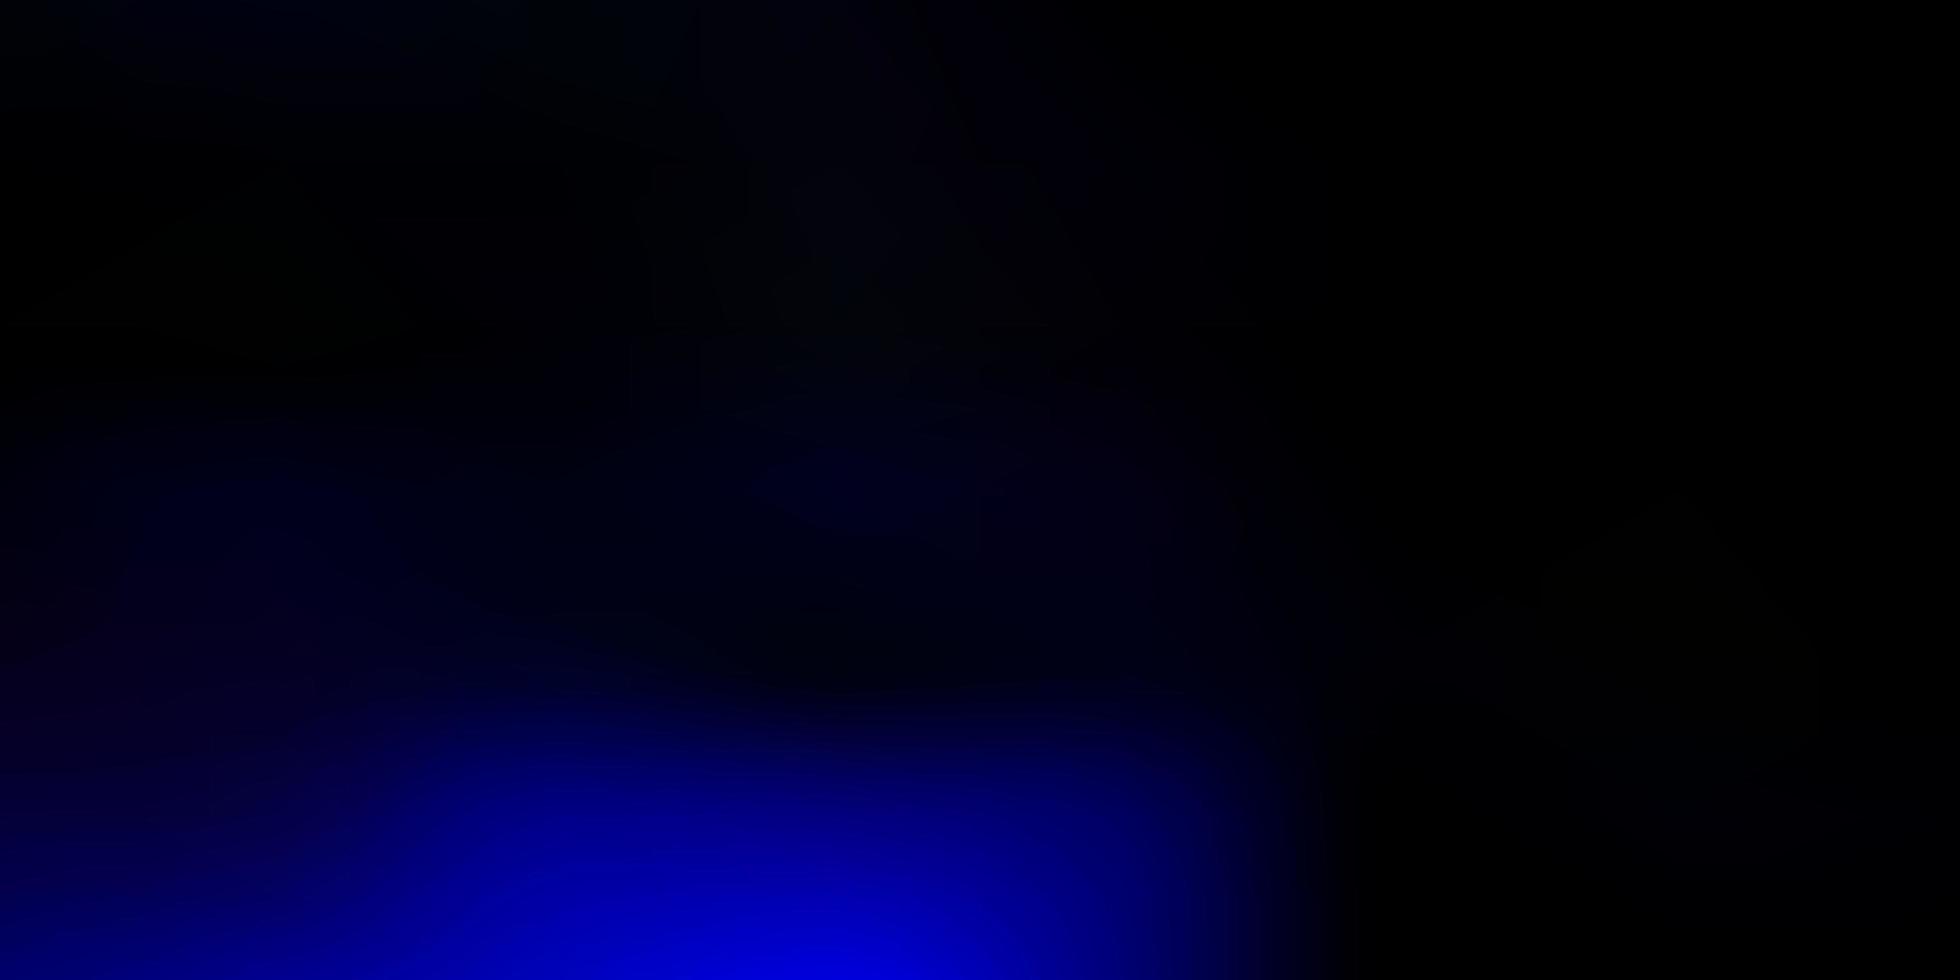 gradiente de vector azul oscuro fondo borroso